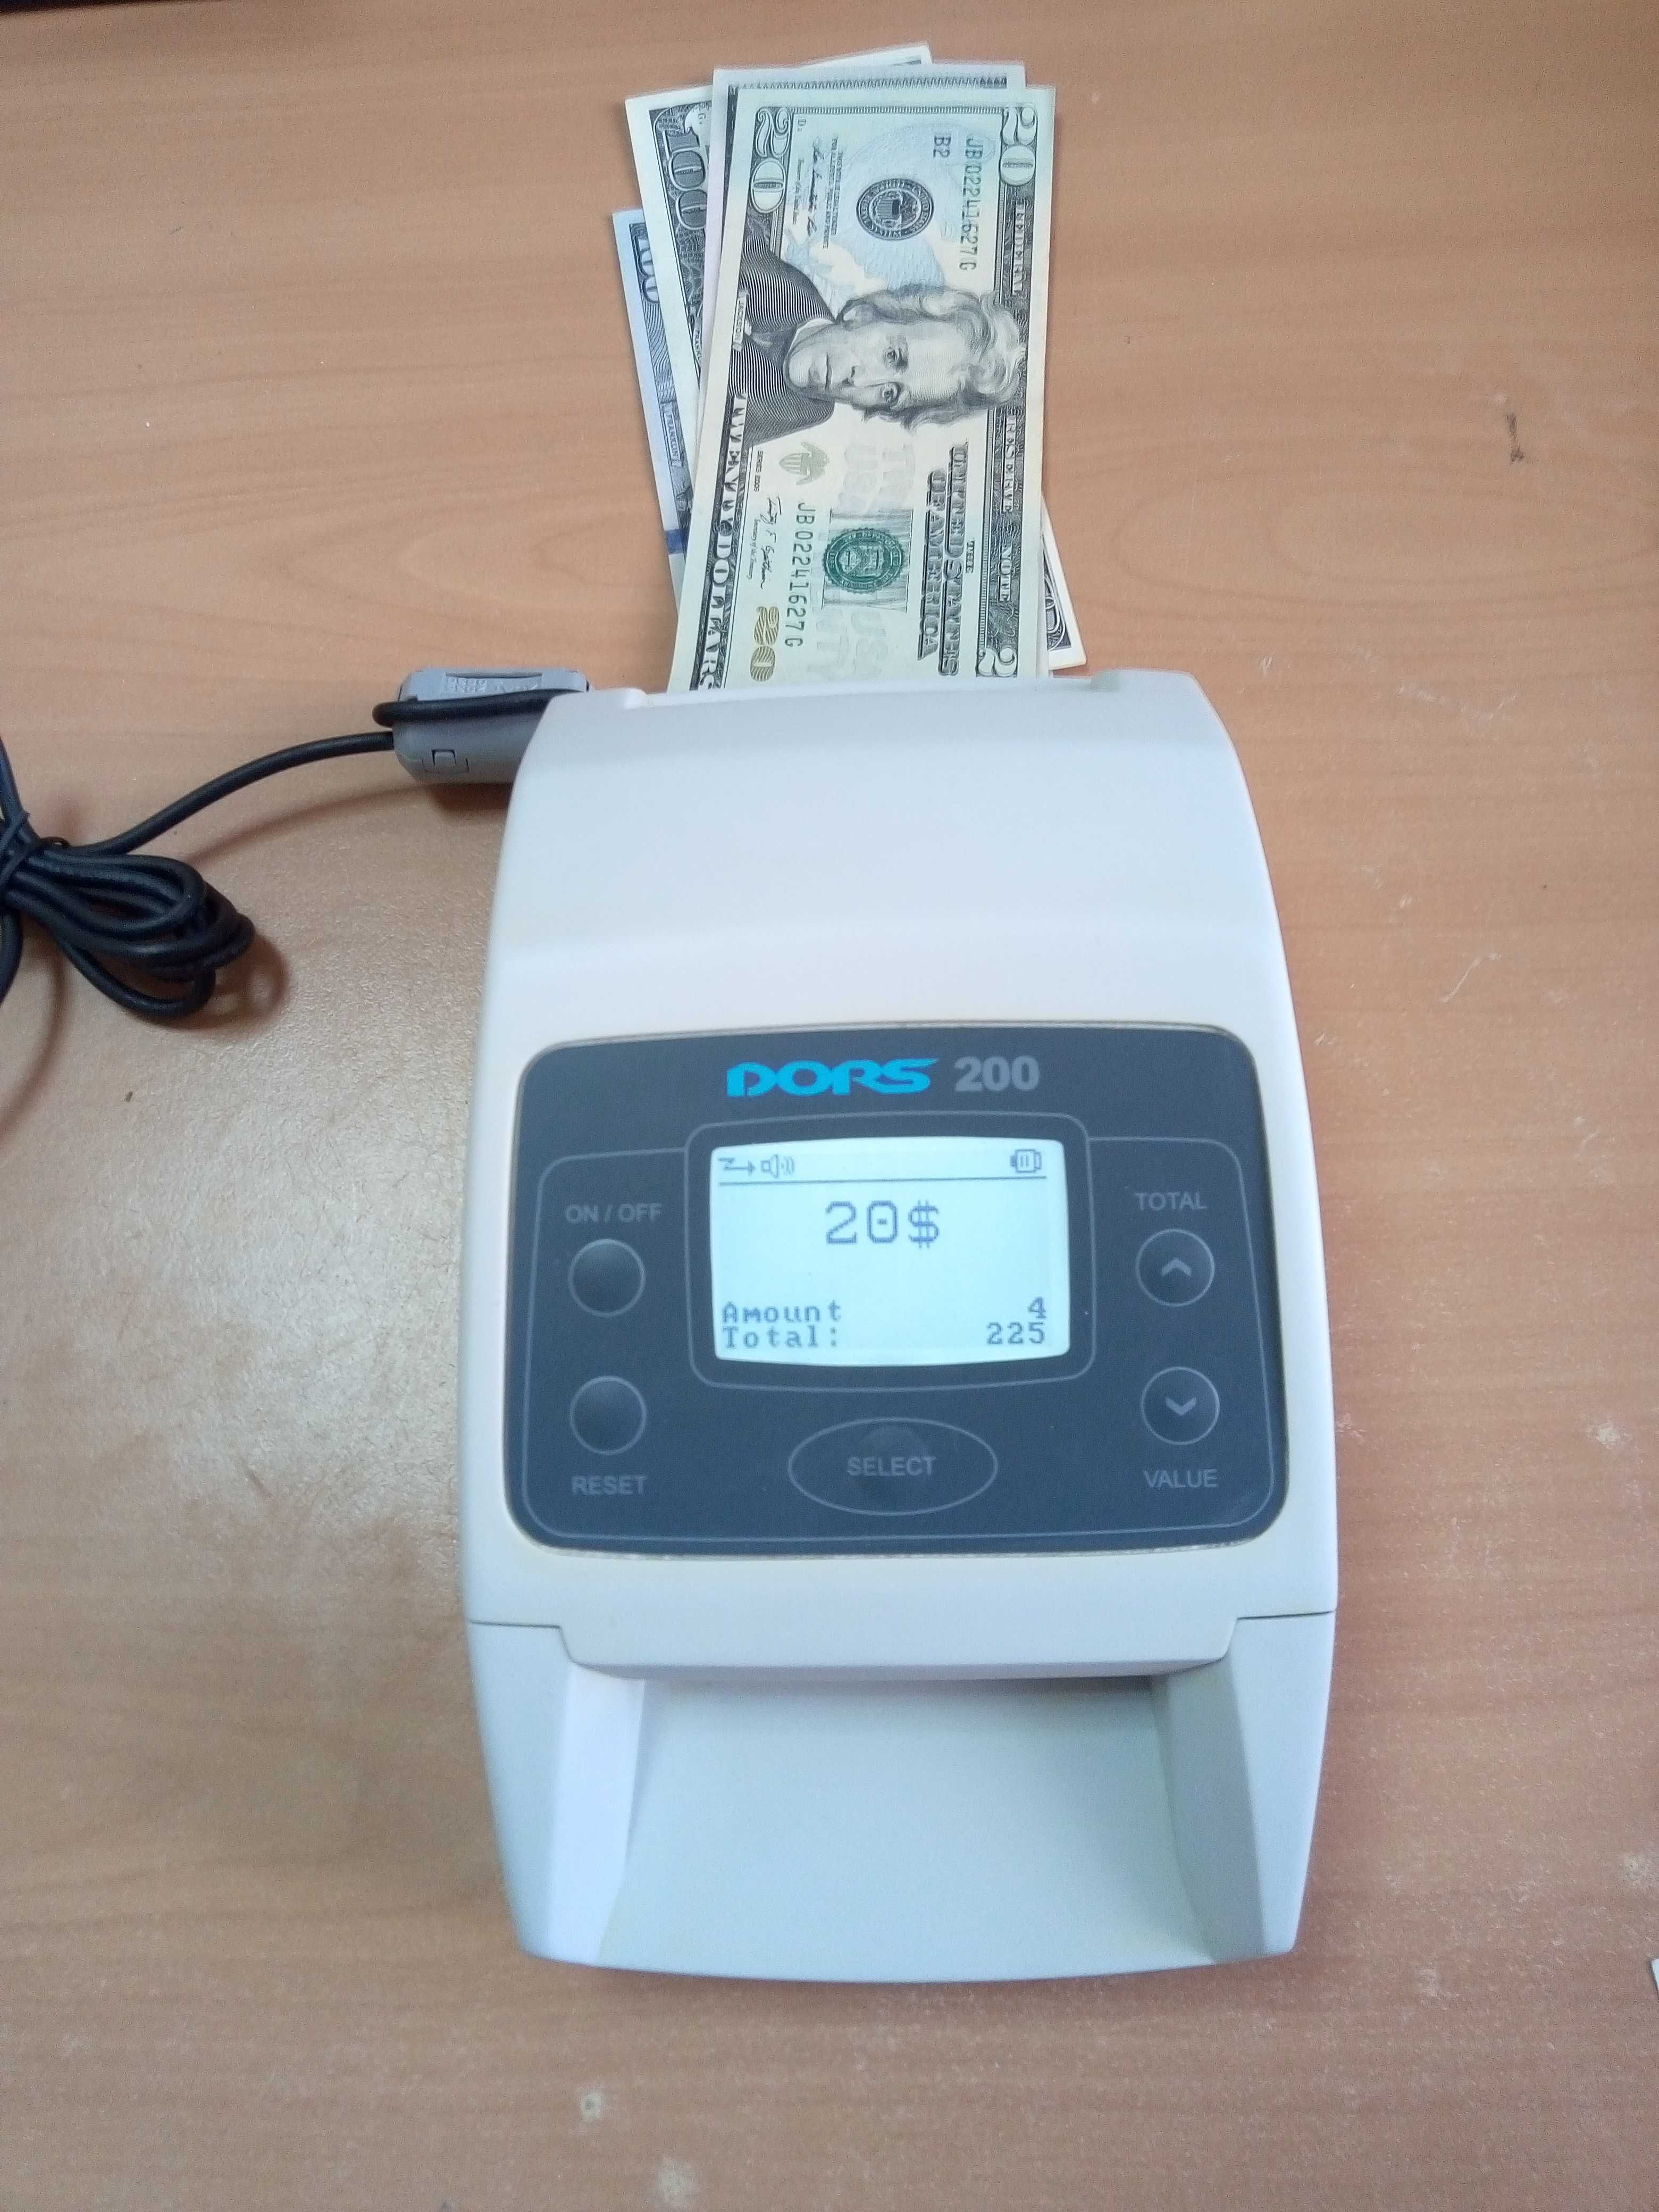 Детектор валют DORS 200 M1 с новой программой.